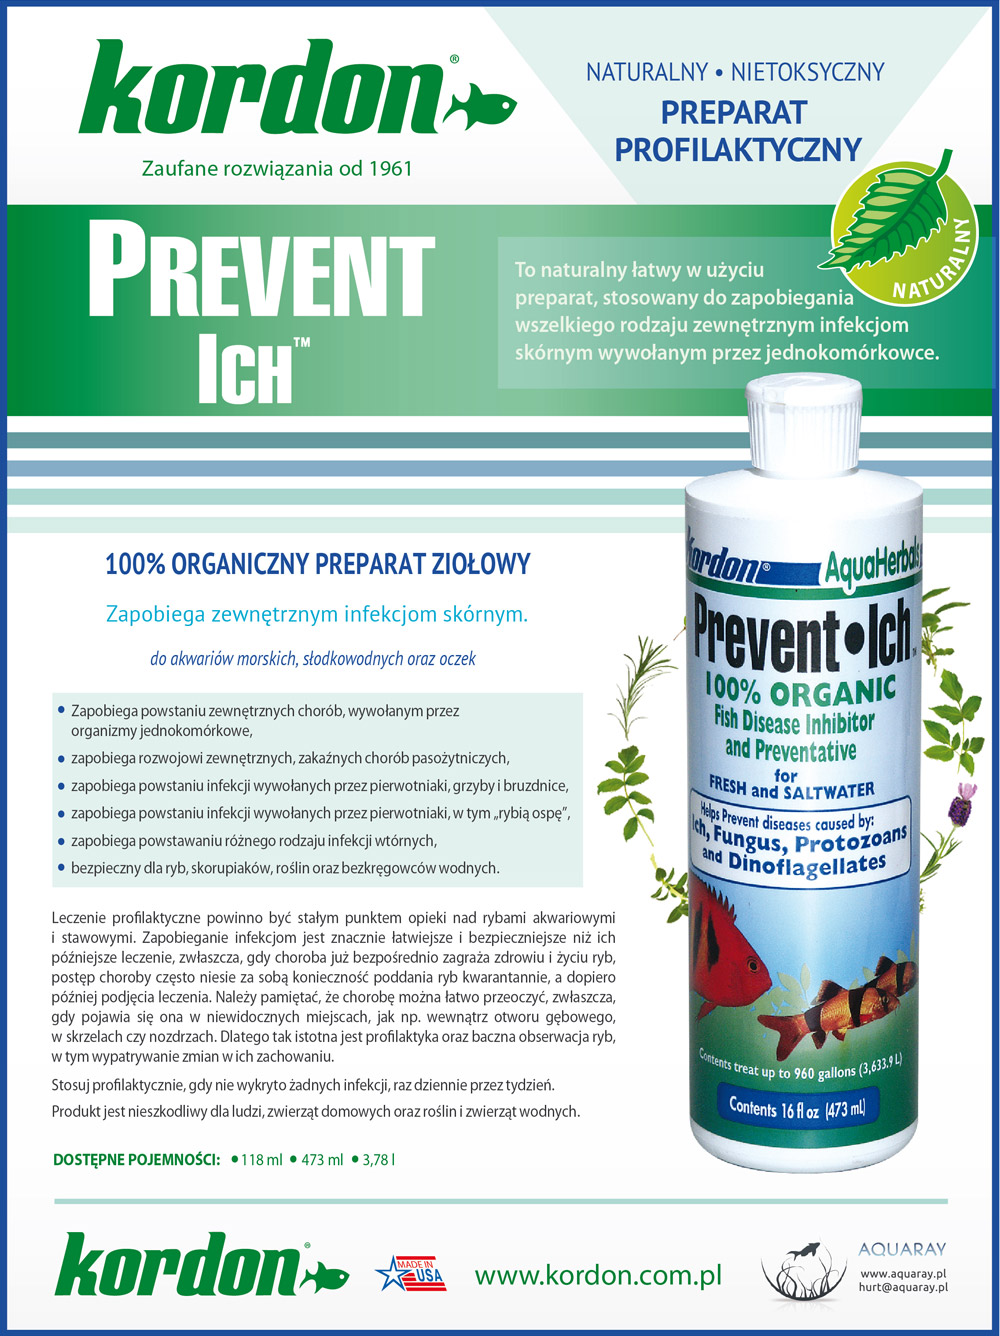 KORDON Prevent Ich (39544) - Ziołowy preparat leczniczy na zewnętrzne infekcje skórne